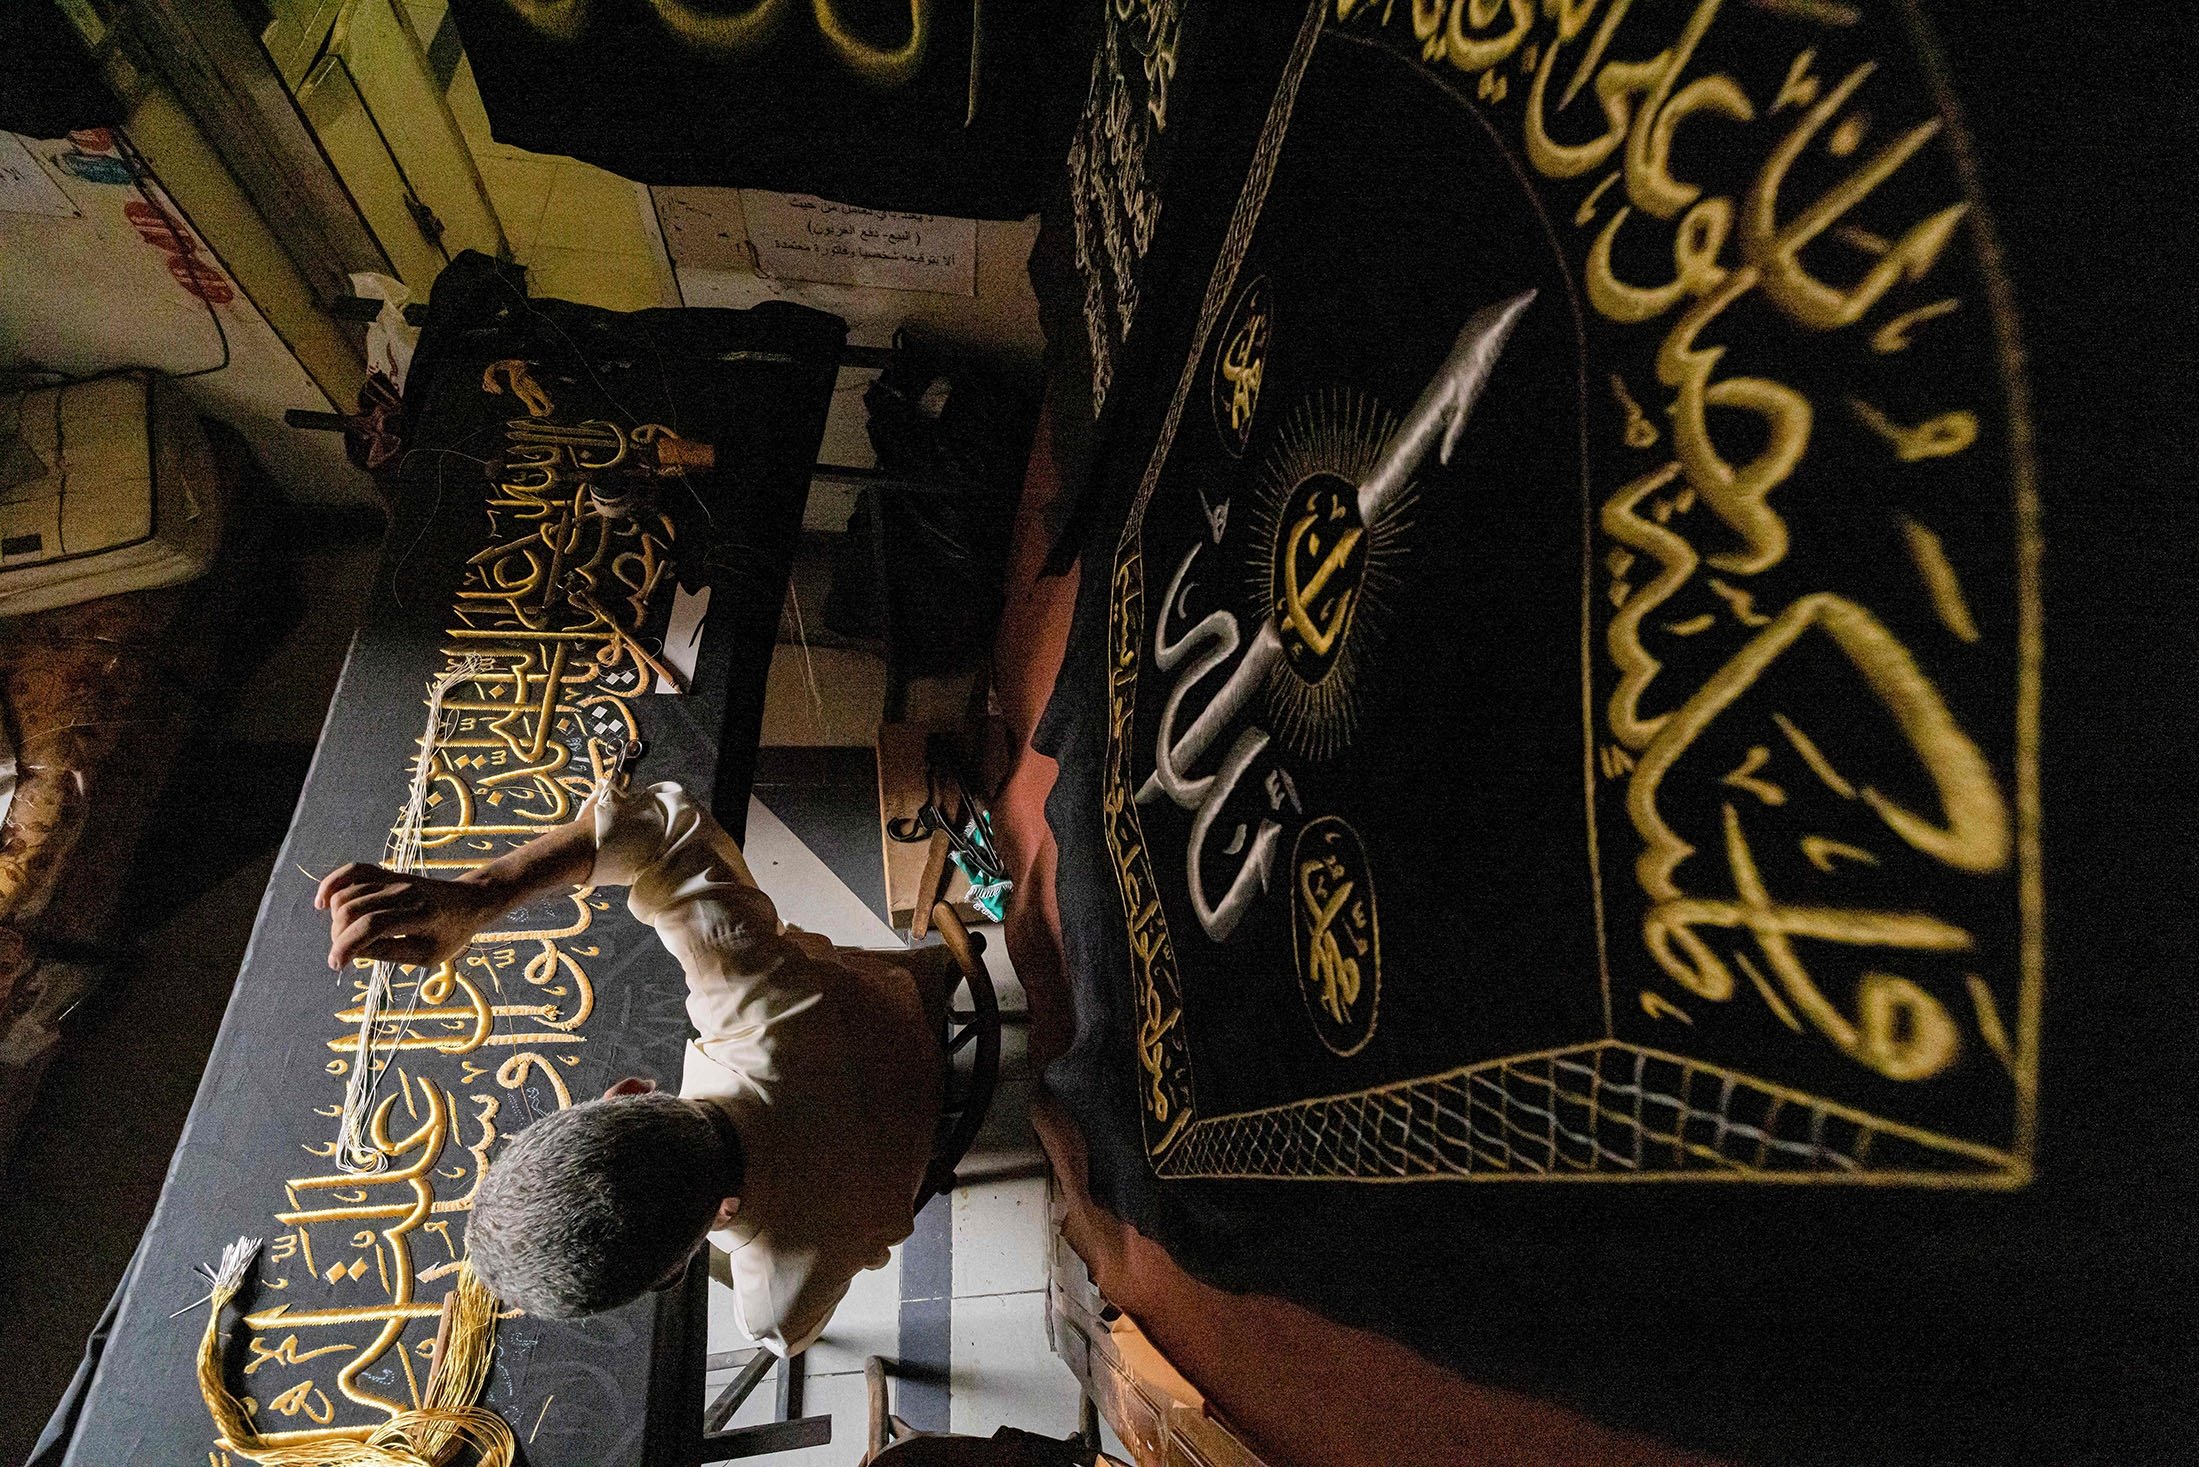 Penyulam Mesir Ahmed Othman el-Kassabgy menjahit dengan benang emas sebuah ayat dari Al-Qur'an ke tirai replika untuk dijual sebagai suvenir bagi wisatawan yang berkunjung ke Kairo, Mesir, 15 Juni 2022. (AFP Photo)